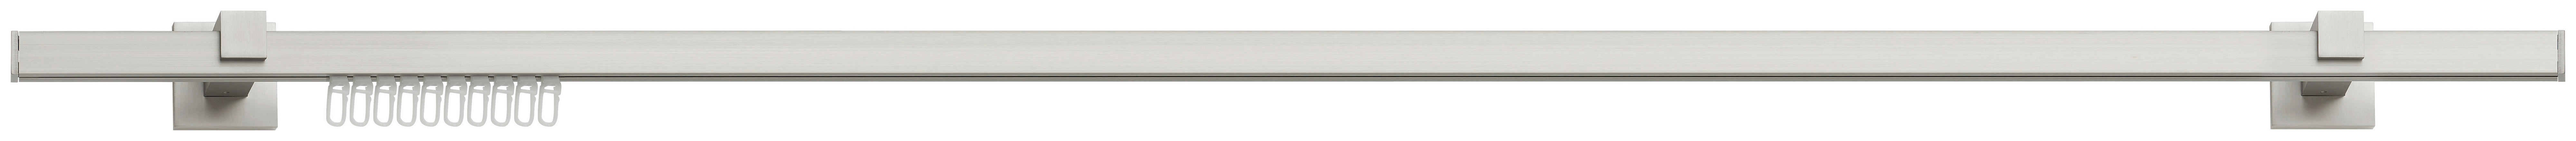 VORHANGSTANGENSET 200 cm  - Edelstahlfarben, Design, Metall (200cm) - Homeware